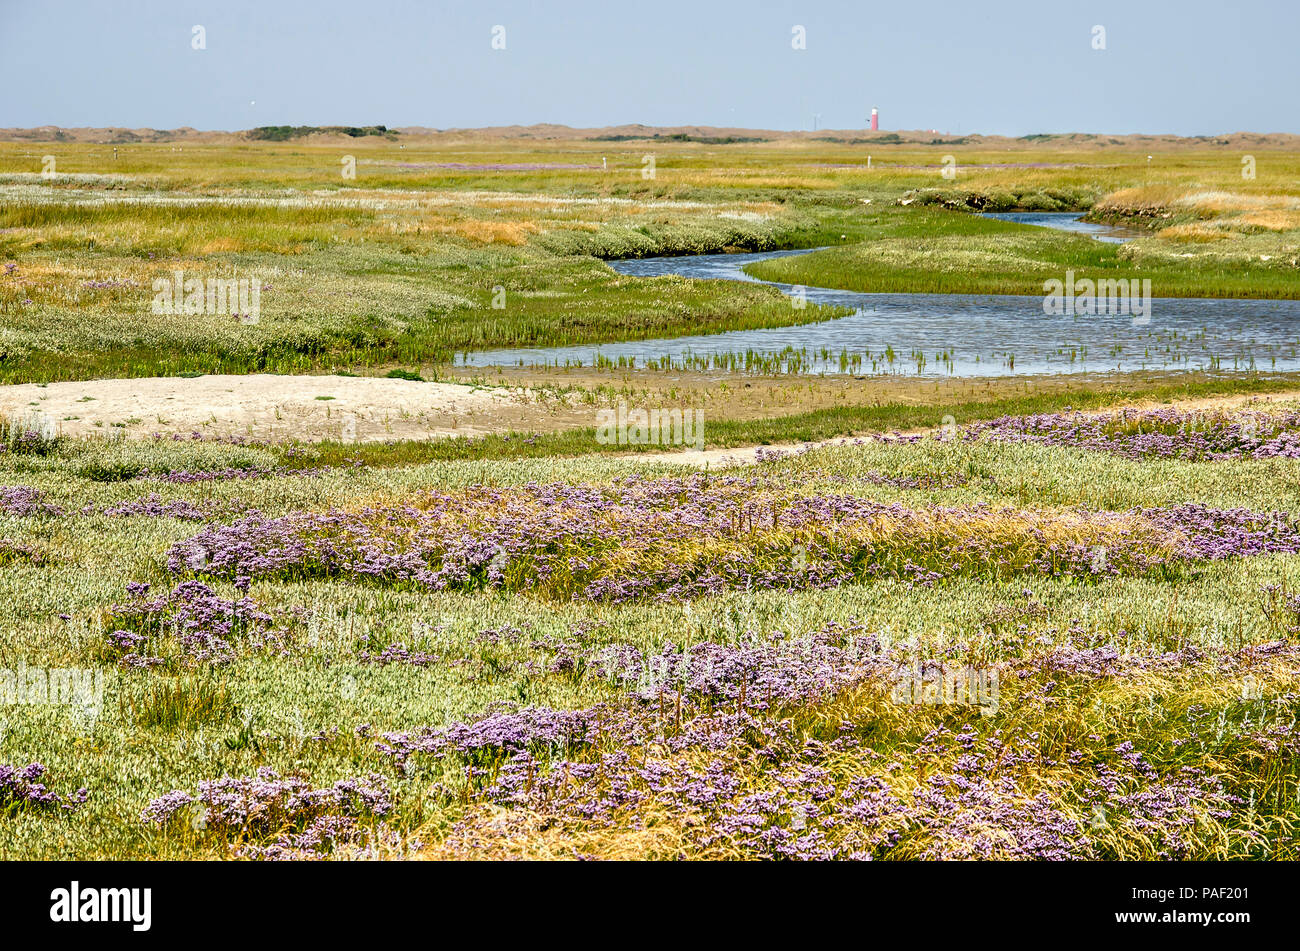 Des images hautes en couleur avec des champs de lavande de mer et d'autres  fleurs sauvages, de marée et de parcelles de sable dans le Parc National  des Dunes de Texel aux